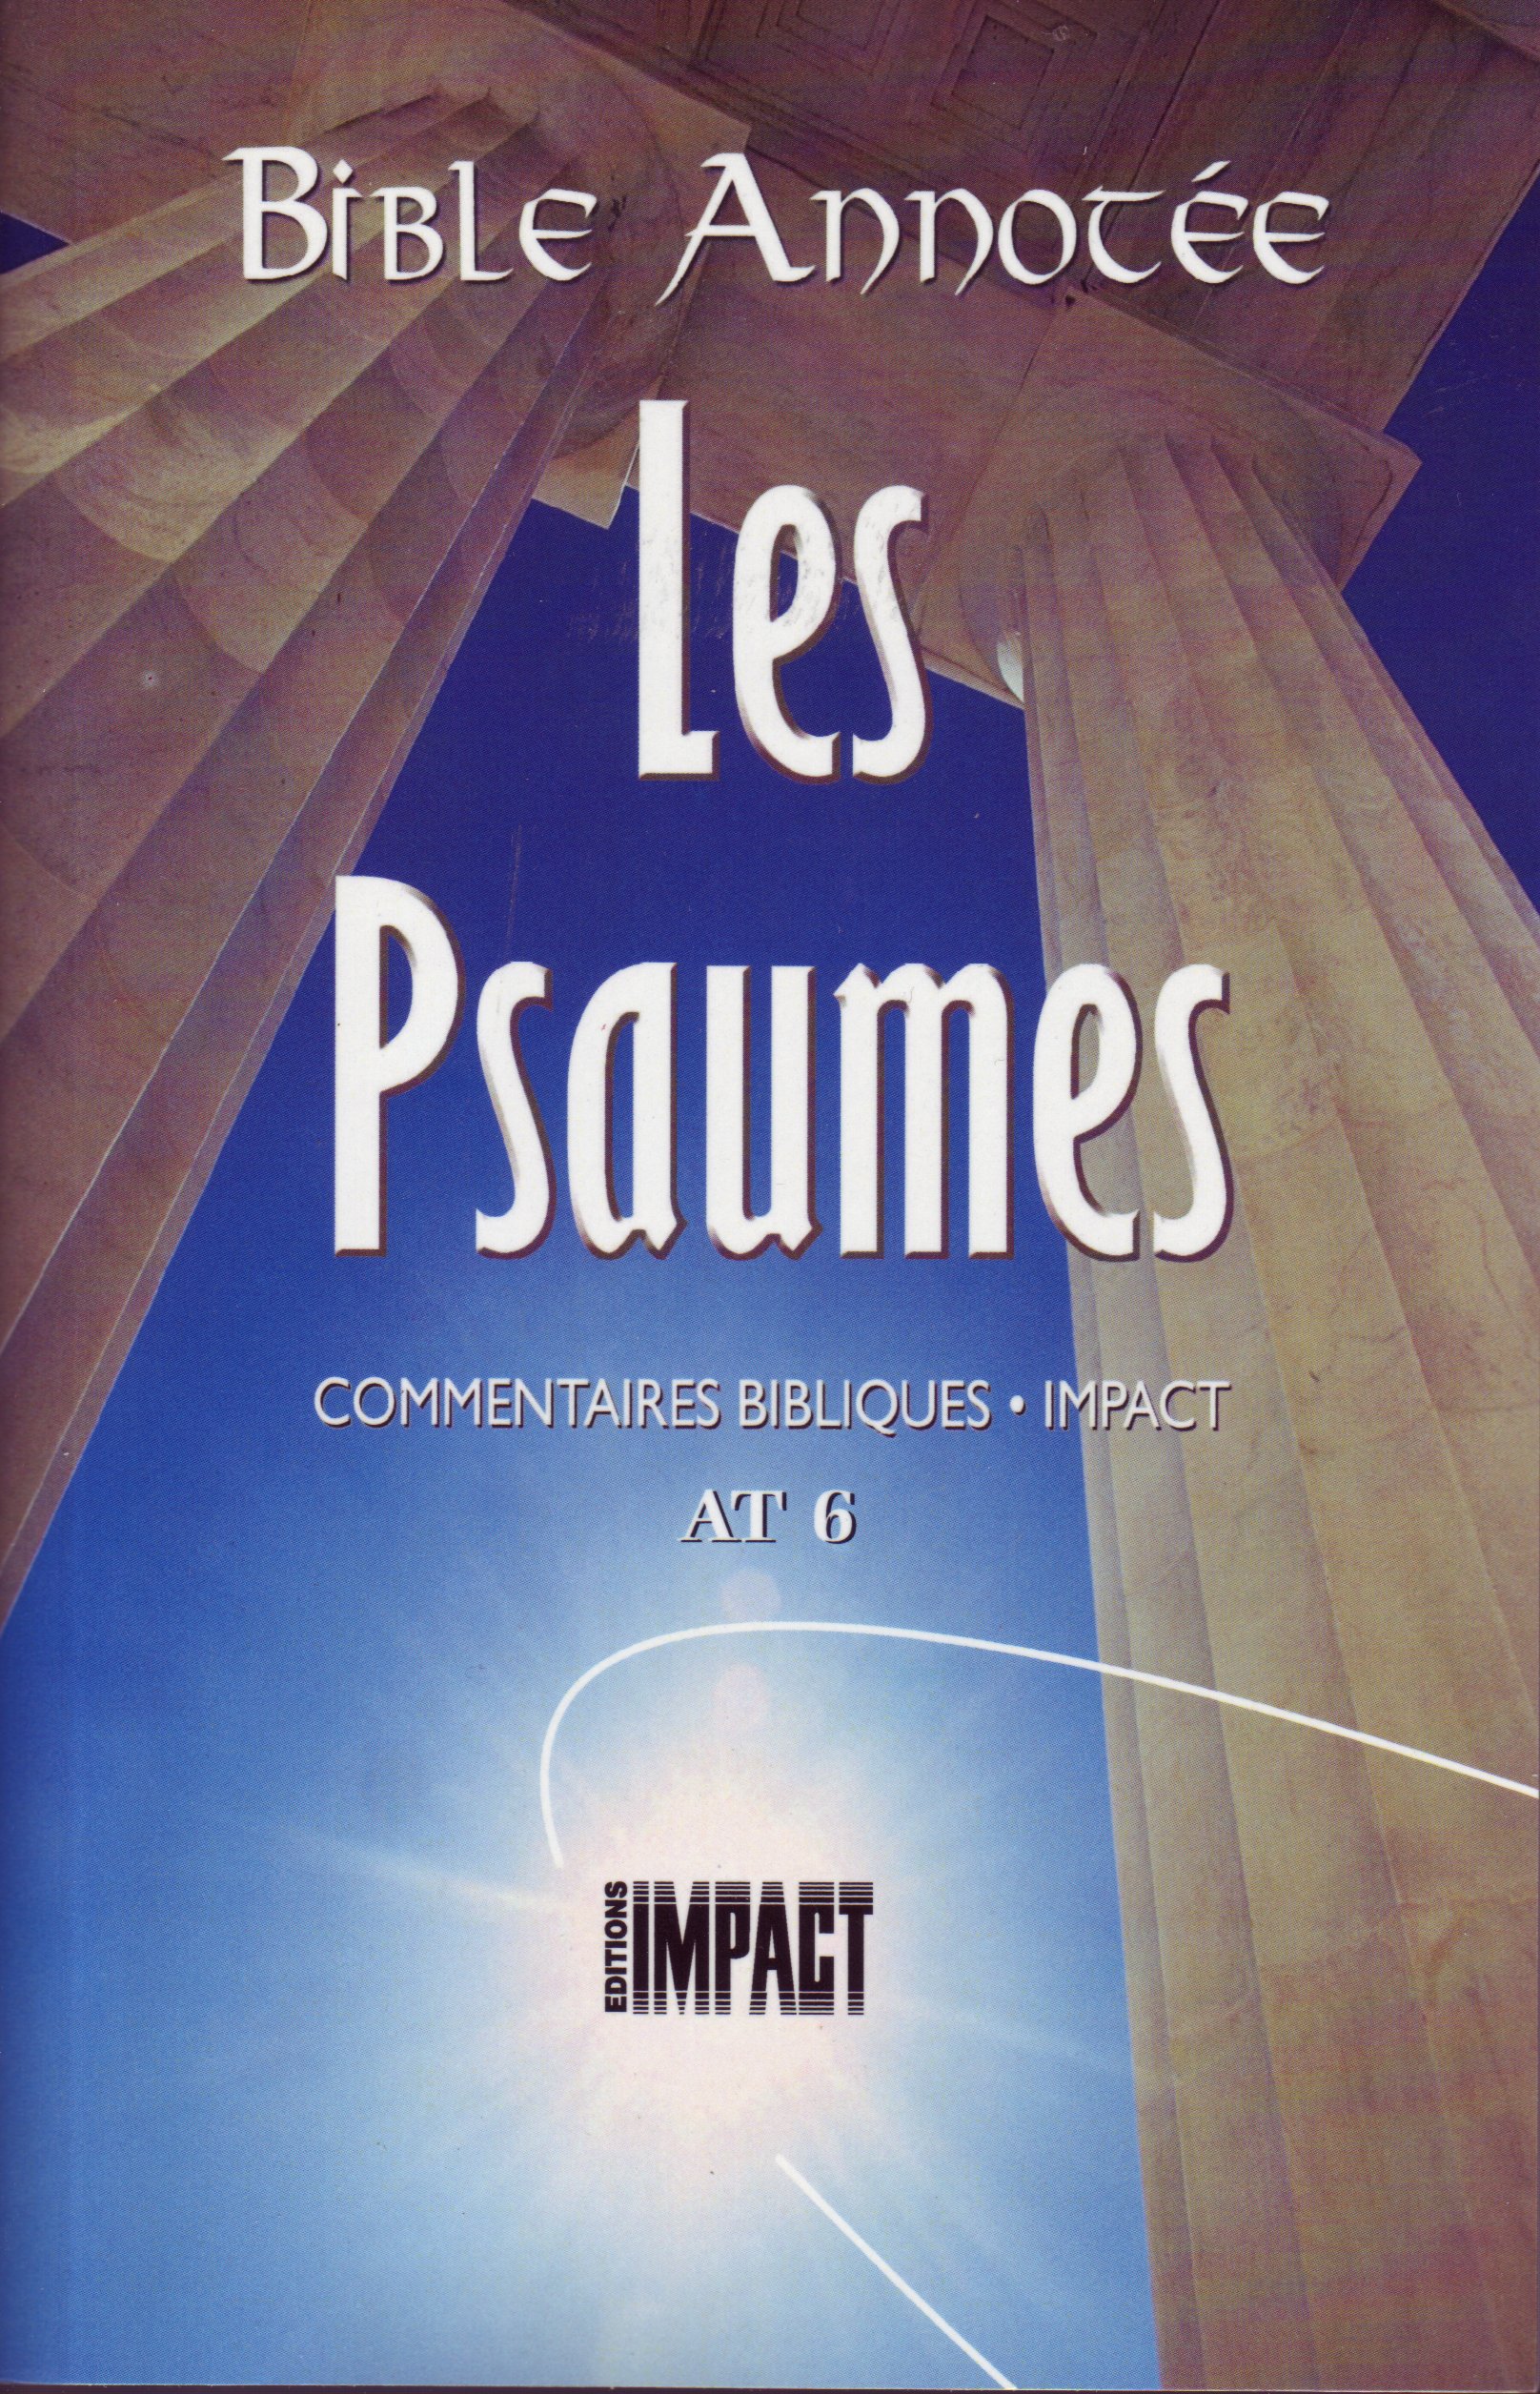 Bible Annotée - Les Psaumes (La) - Commentaires bibliques Impact AT 6